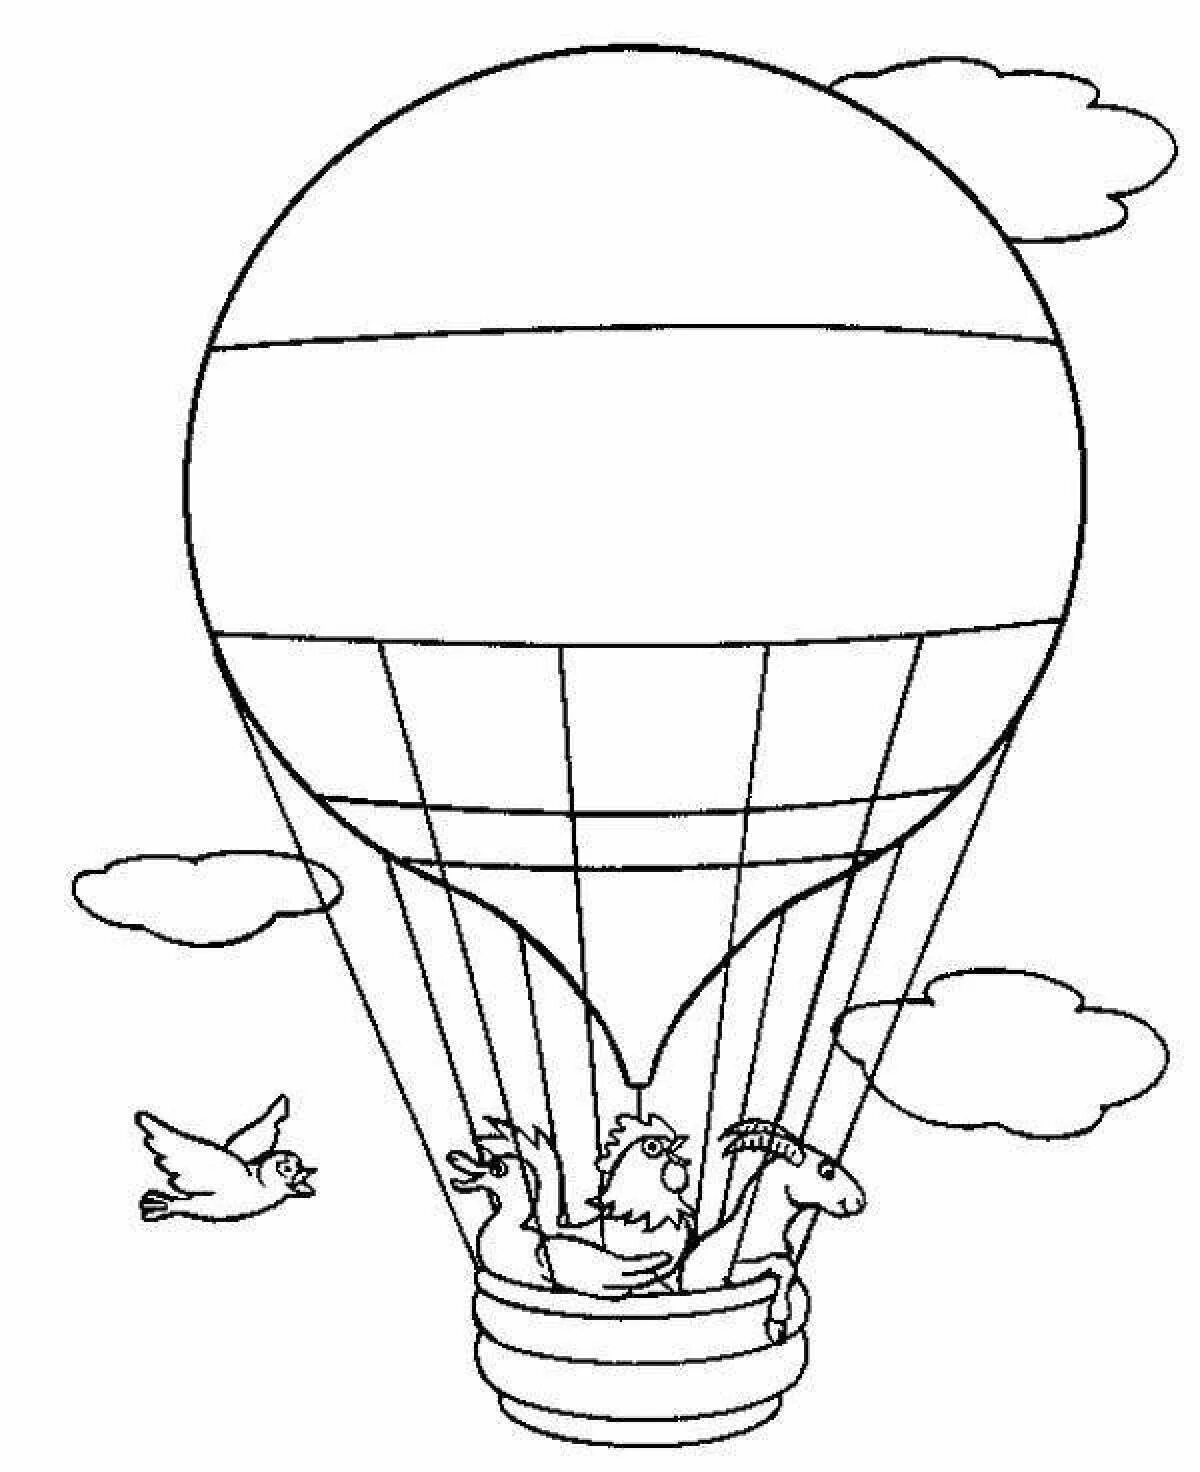 Задания в воздушном шаре. Воздушный транспорт раскраски для детей. Воздушный шар раскраска. Раскраска душный транспорт. Воздушный шар раскраска для детей.